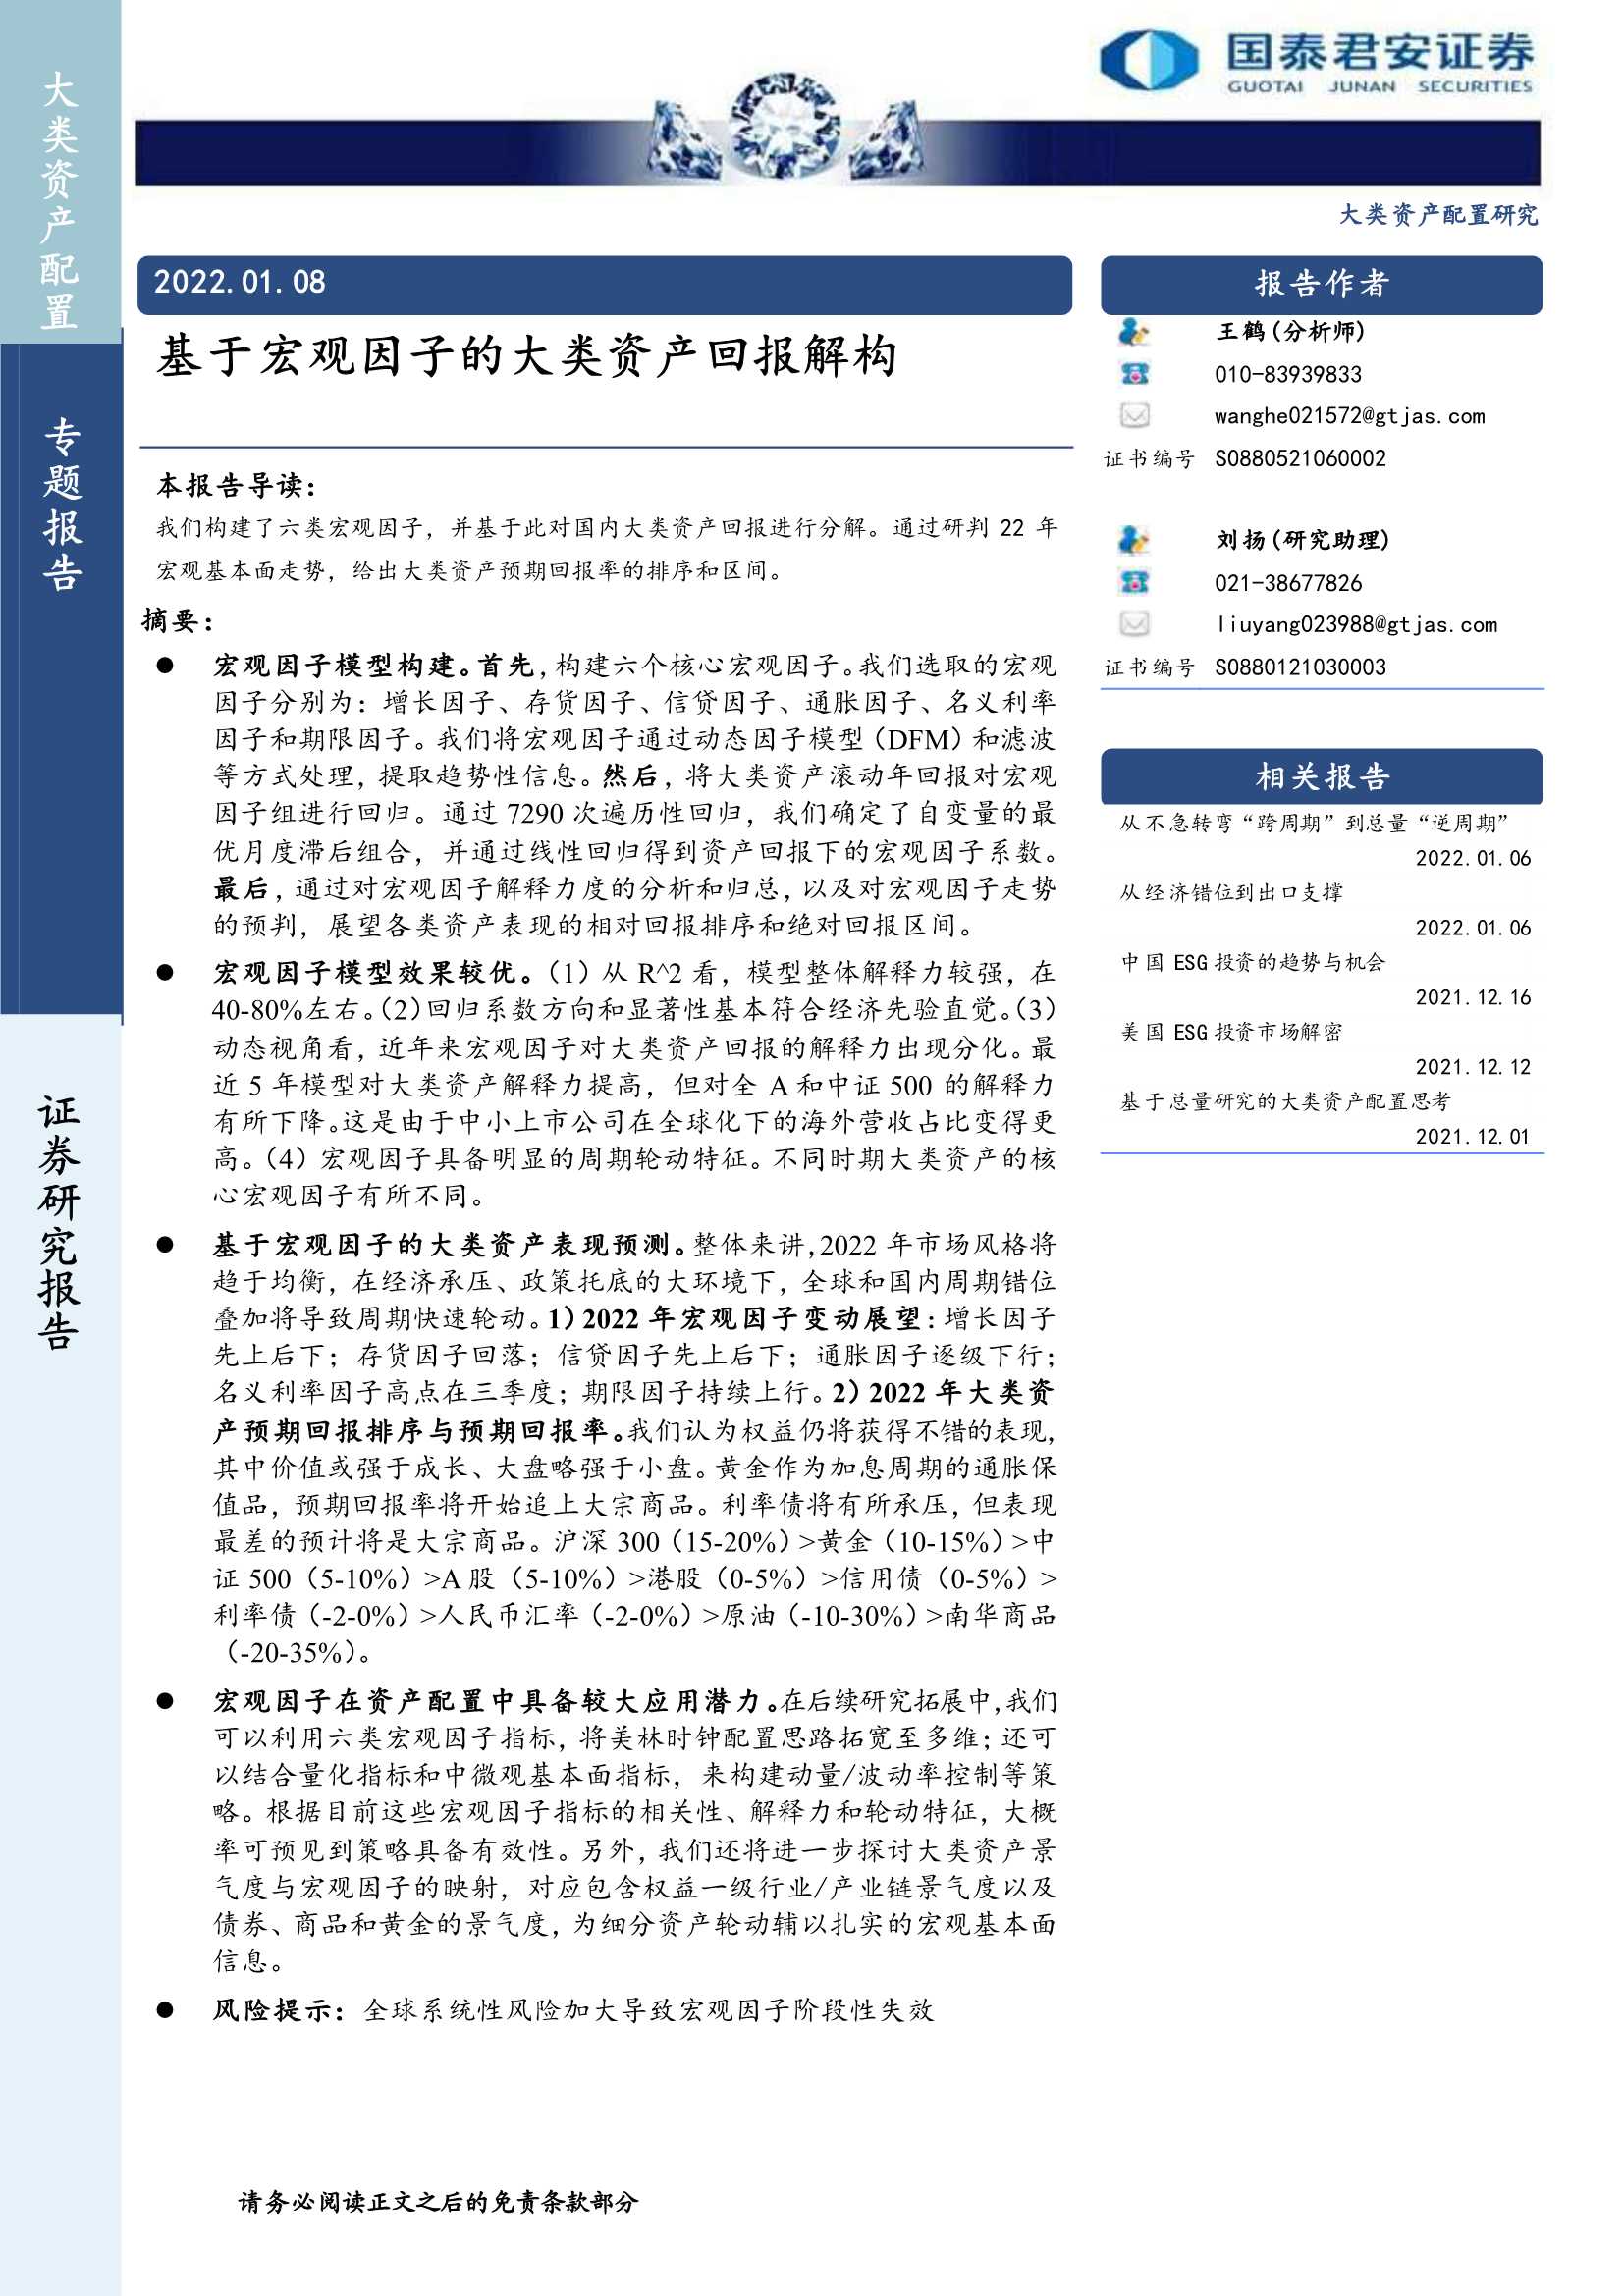 国泰君安-基于宏观因子的大类资产回报解构-20220108-31页